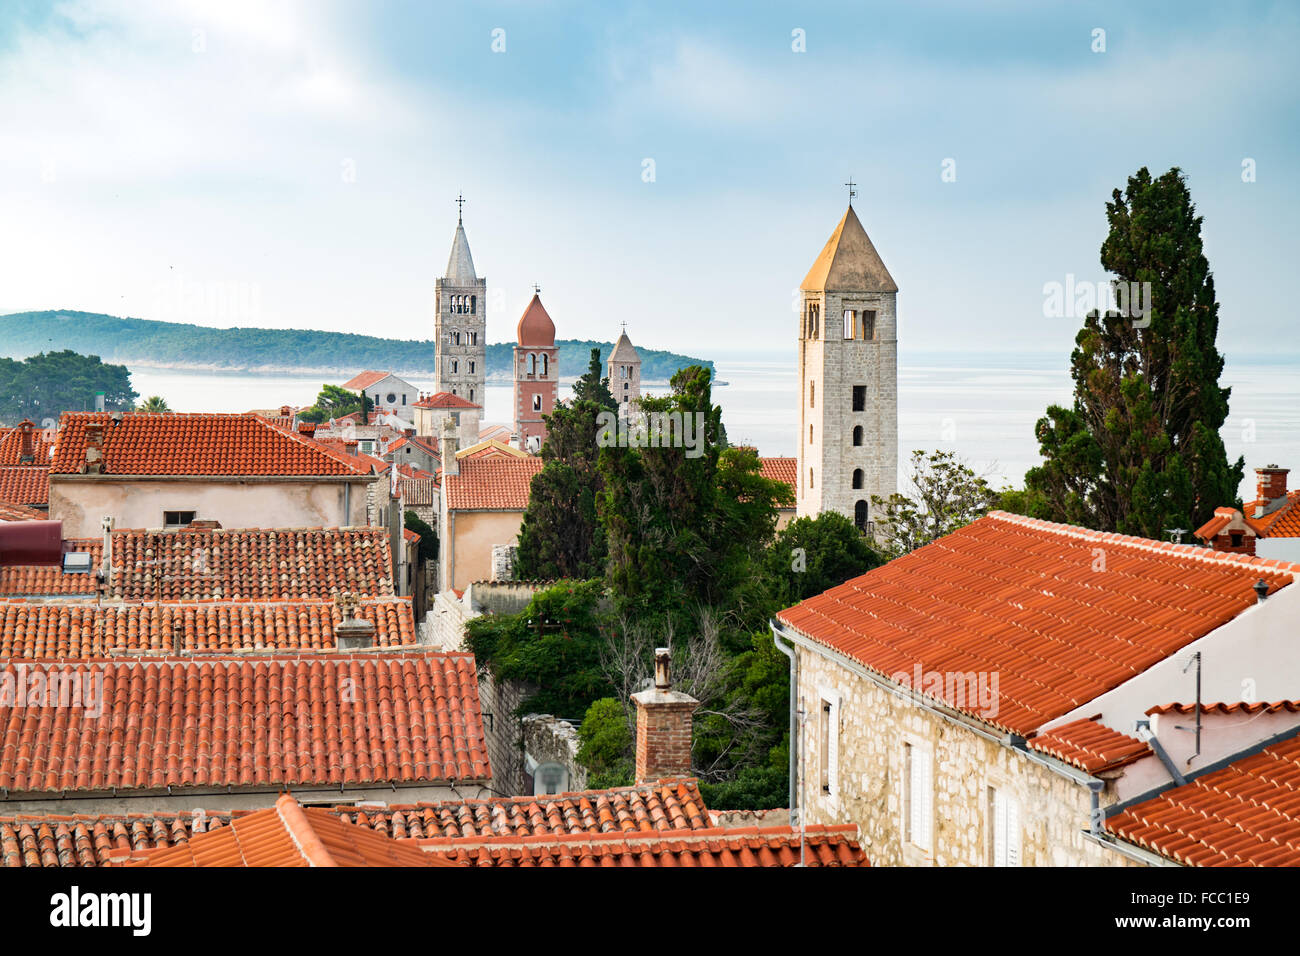 Vue de la ville de Rab, station touristique croate célèbre pour ses quatre clochers. Banque D'Images